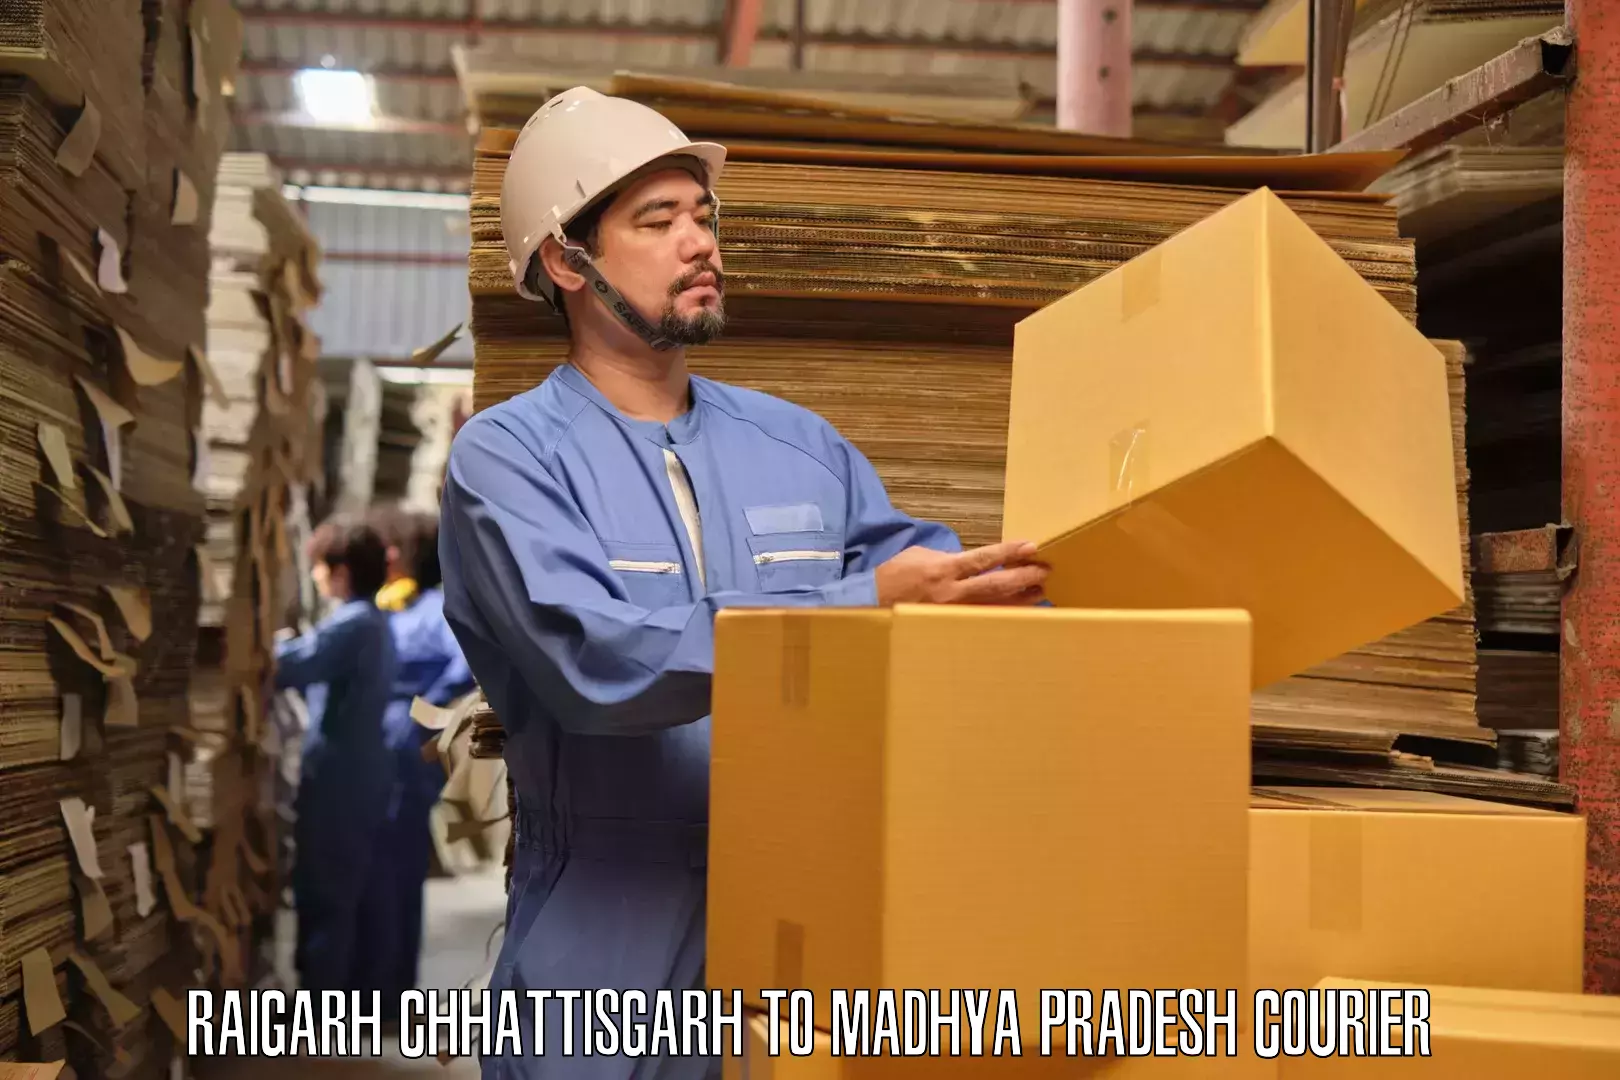 Moving and packing experts Raigarh Chhattisgarh to Pawai